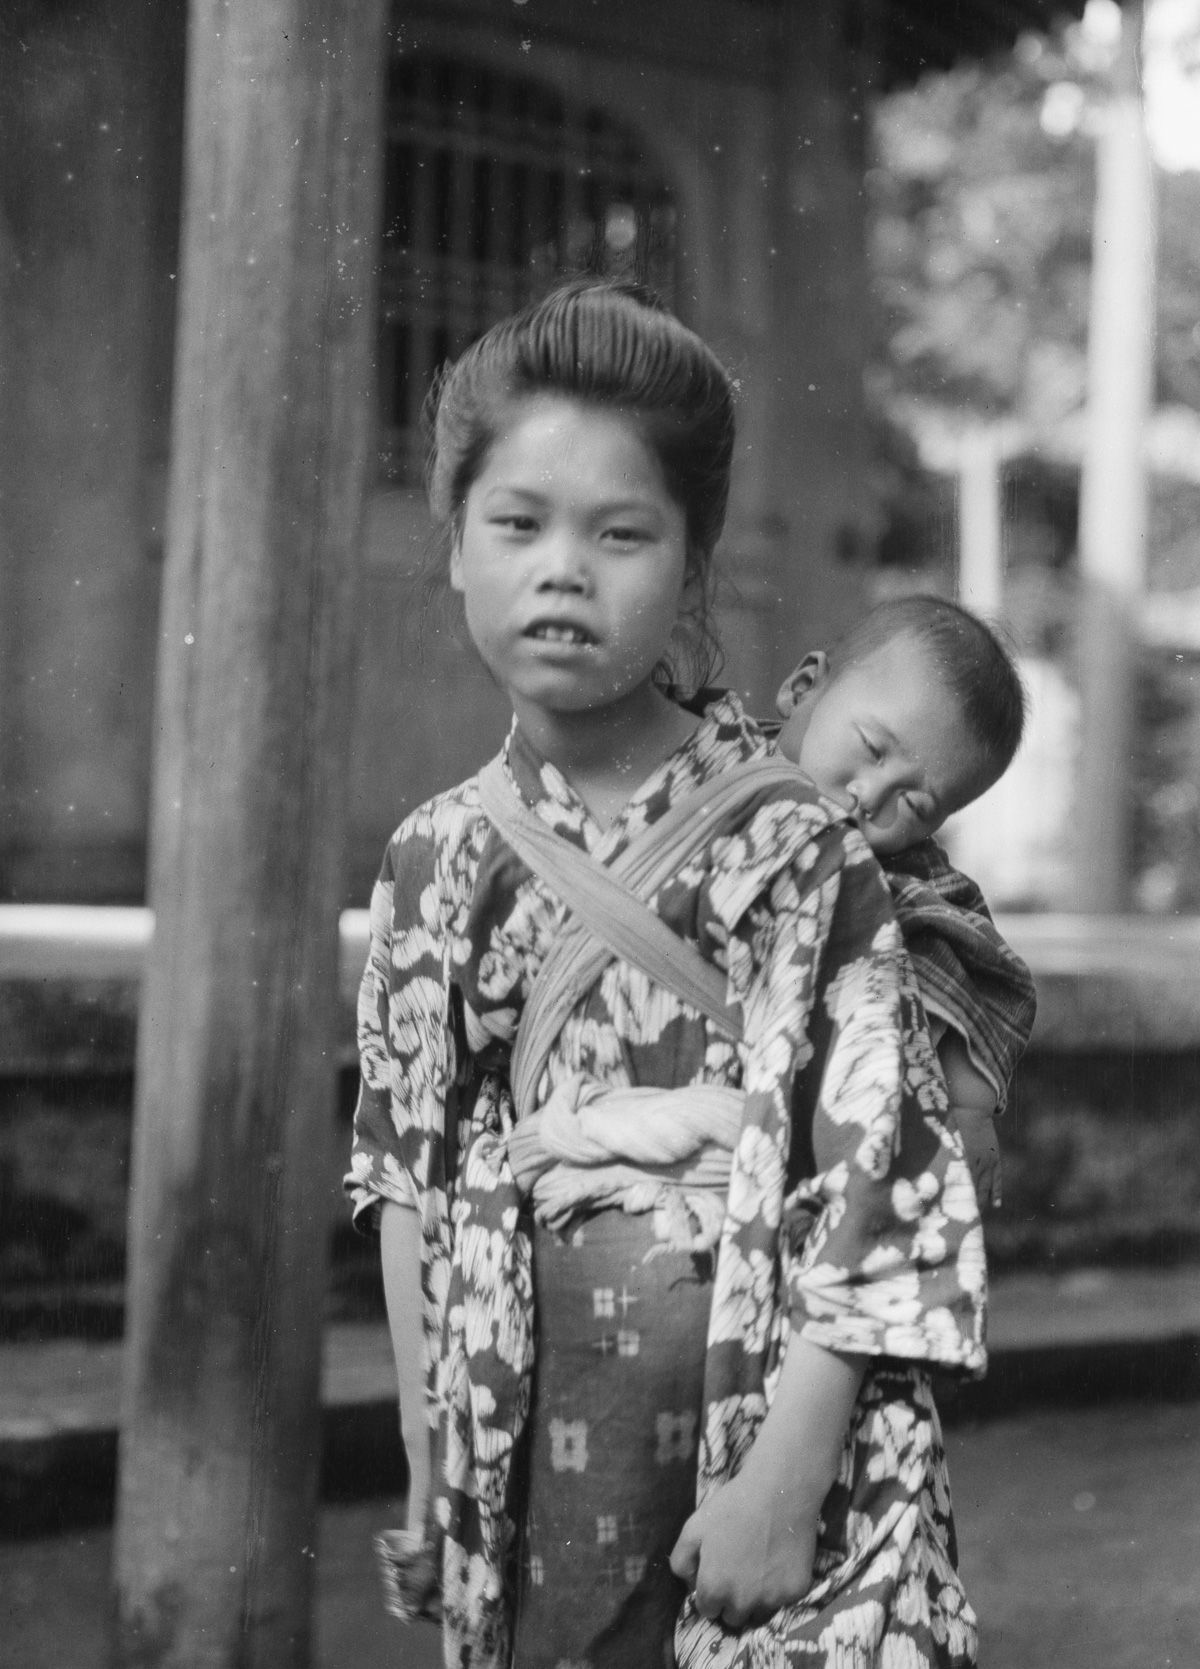 Yaponiya istoricheskie foto Arnold Dzhente 35